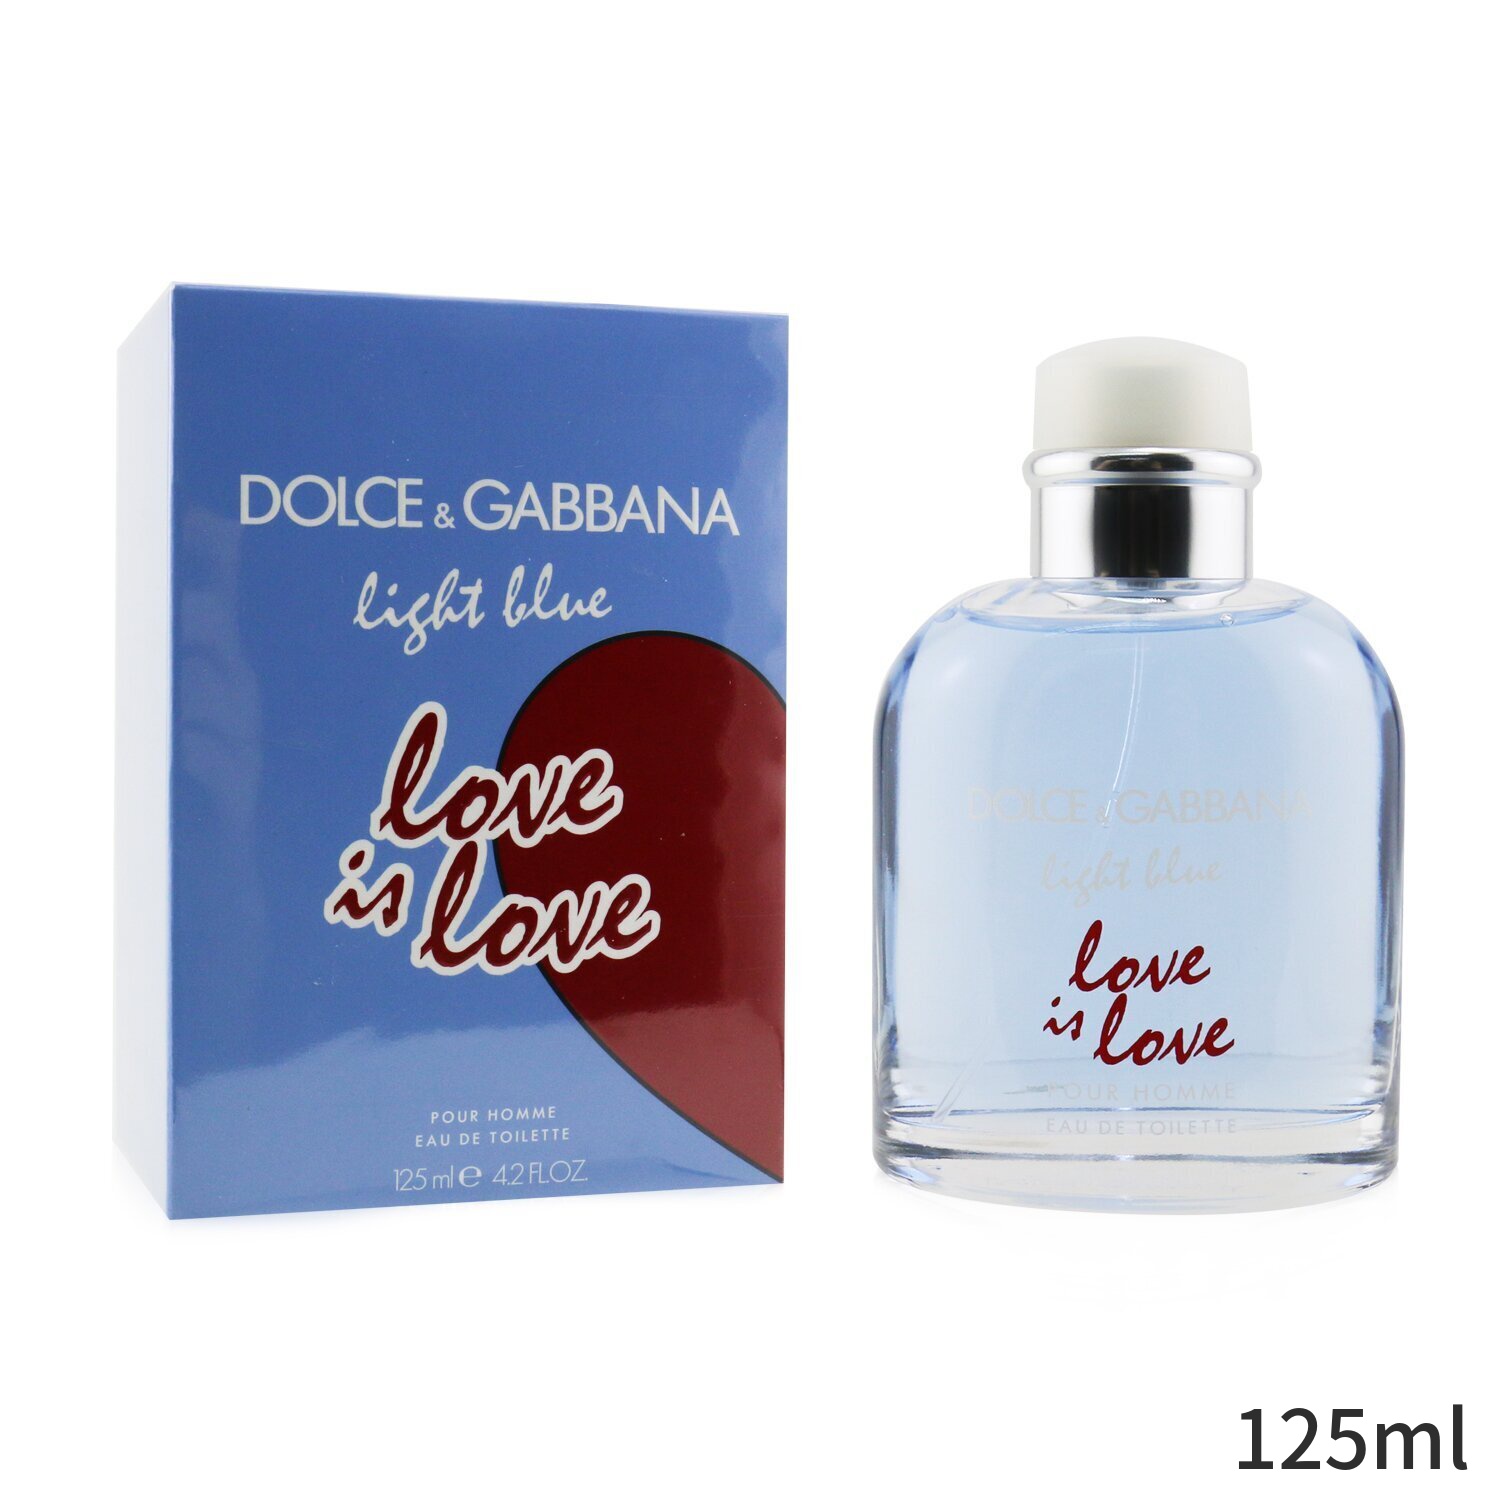 オンライン ショップ ドルチェ&ガッバーナ 香水 Dolce & Gabbana Light